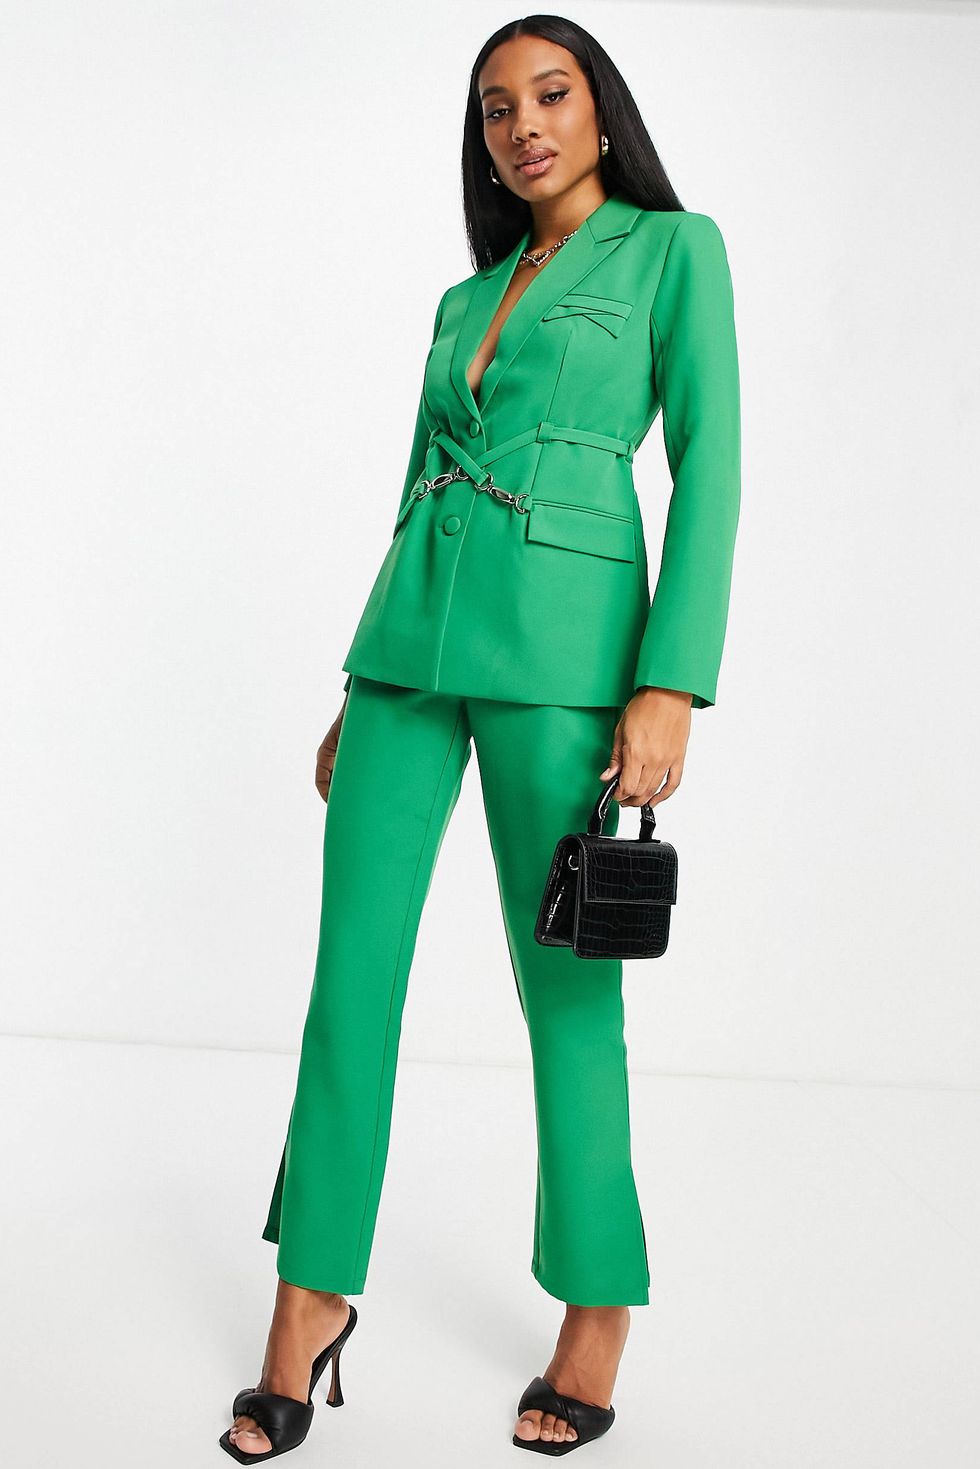 20 Best Women's Suit Sets of 2023 - Chic Suit Sets